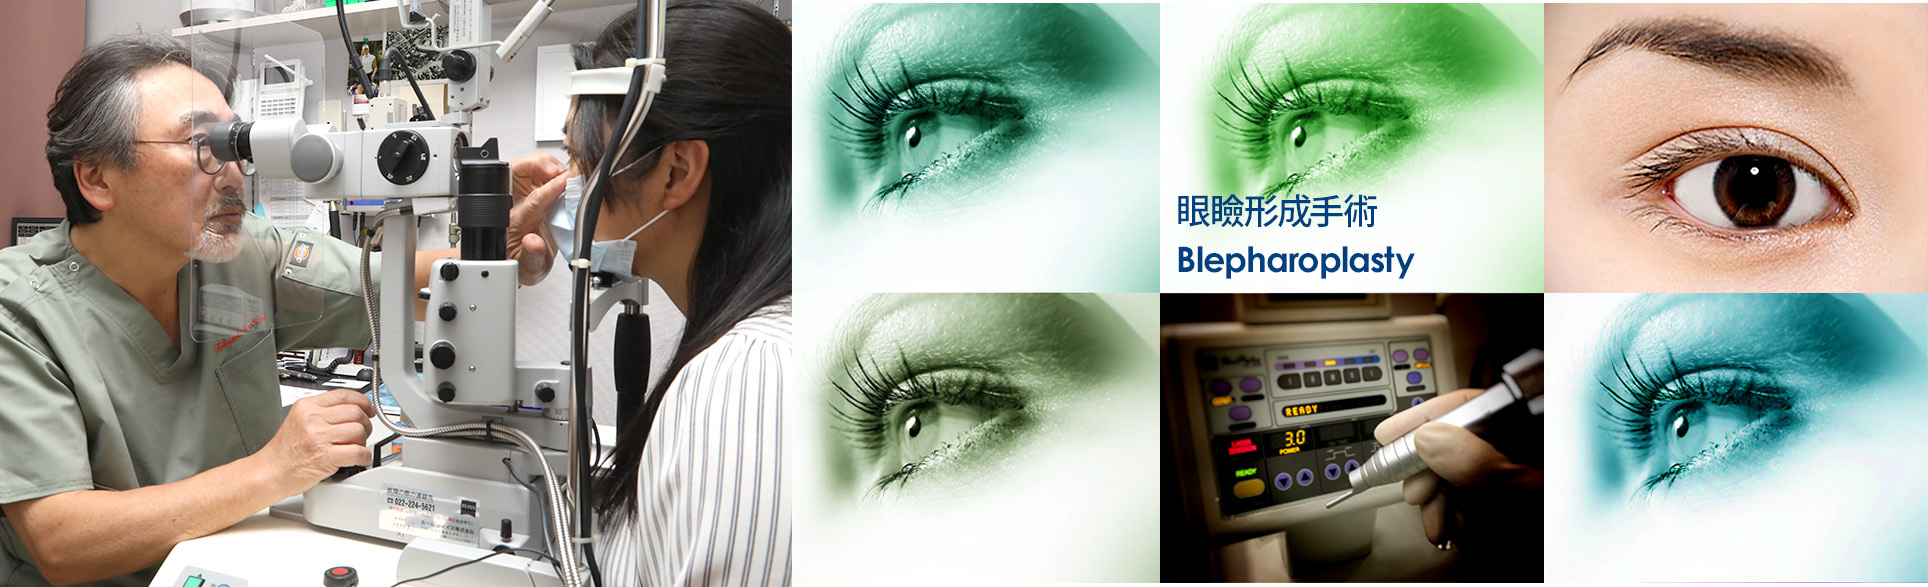 眼瞼形成手術 Blepharoplasty